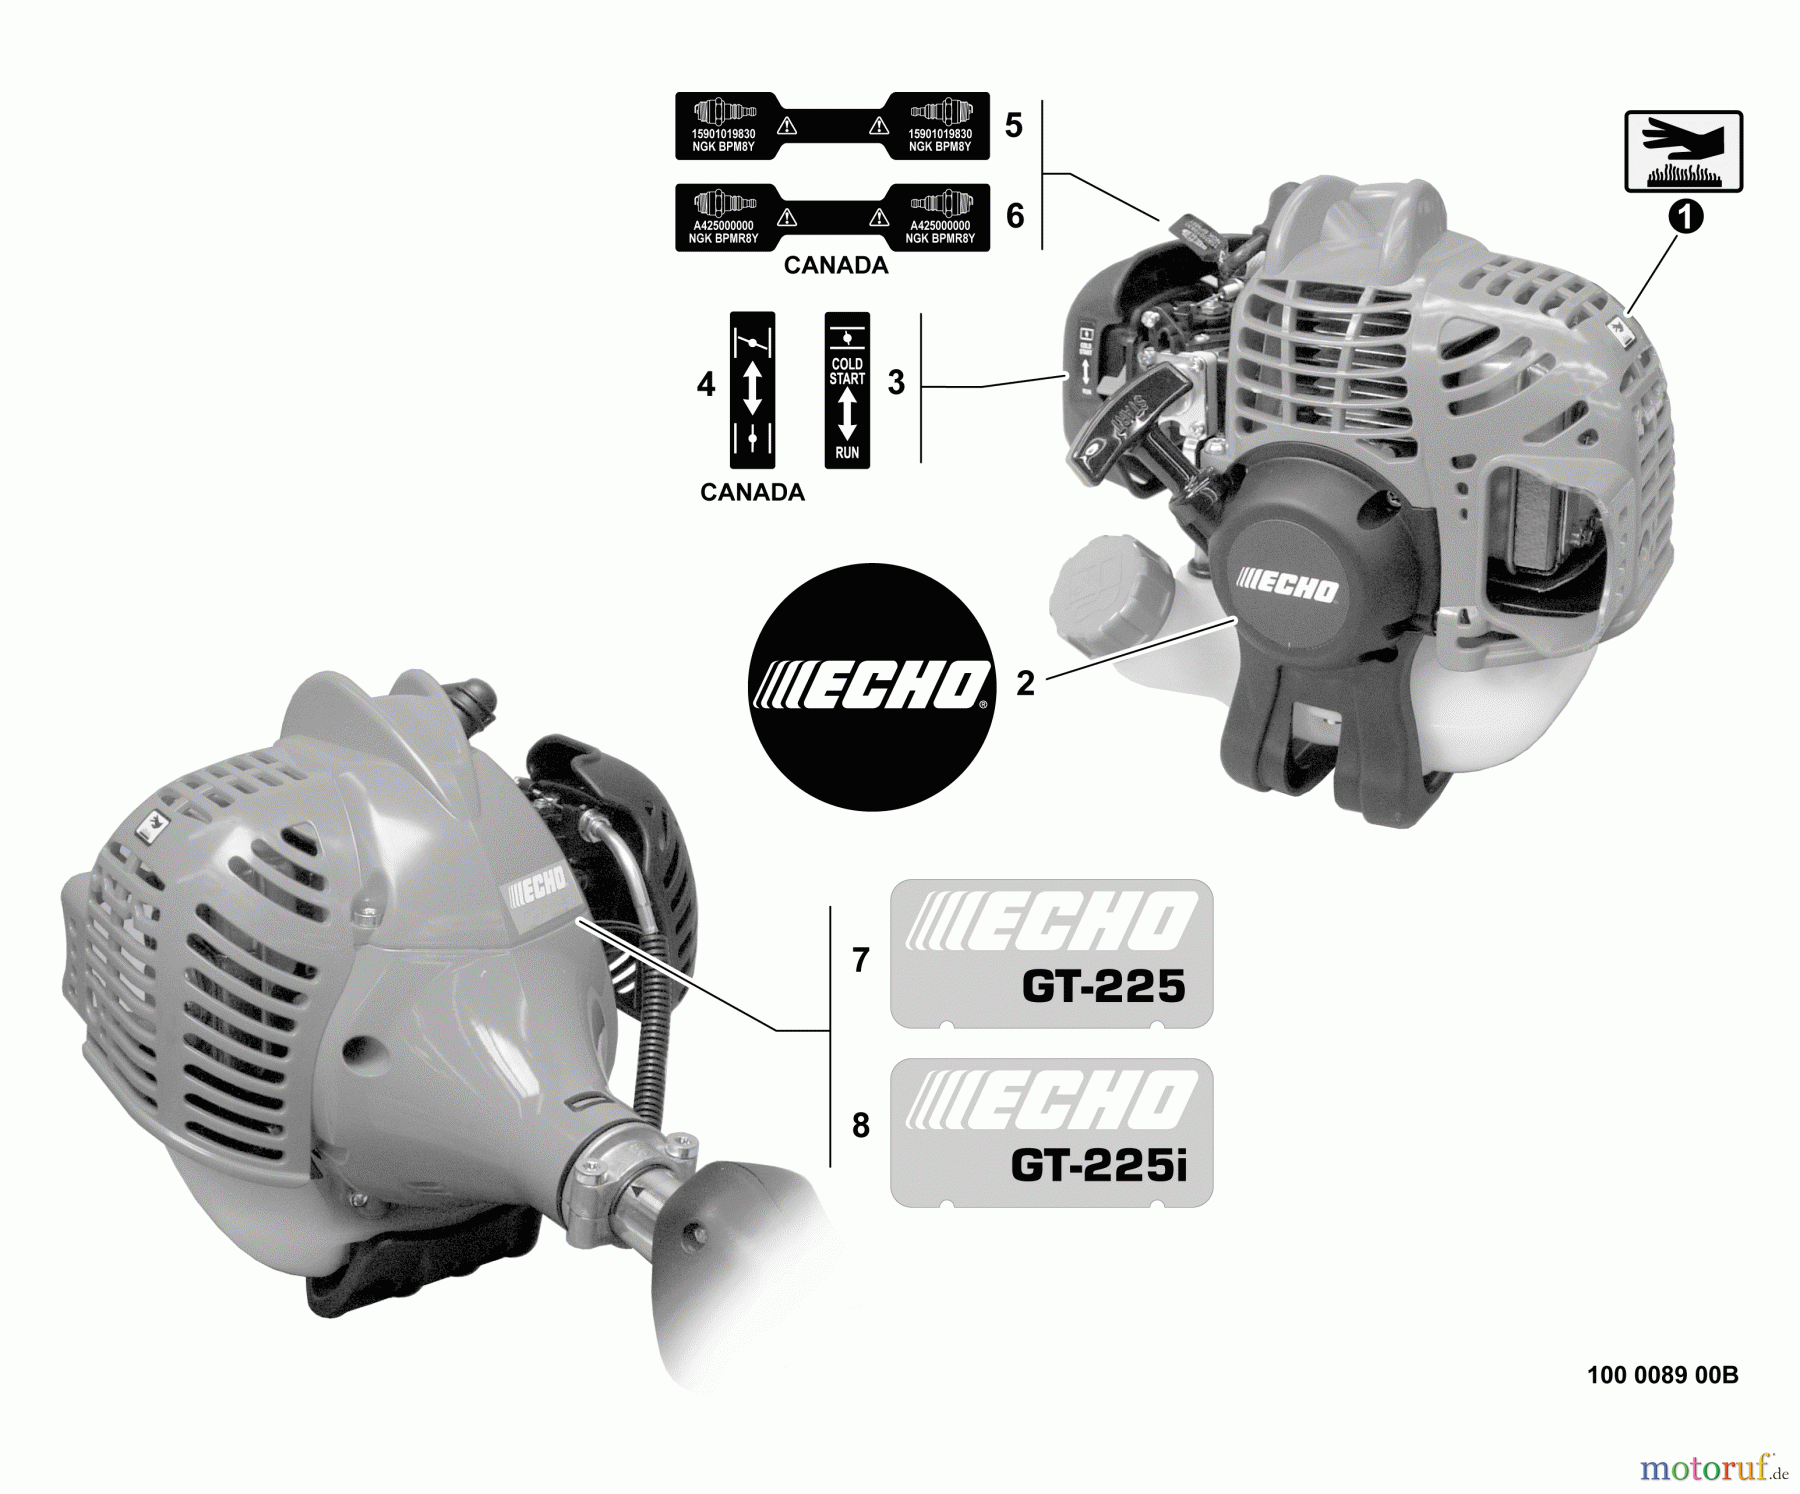  Echo Trimmer, Faden / Bürste GT-225i - Echo String Trimmer, S/N:S54813001001 - S54813999999 Labels